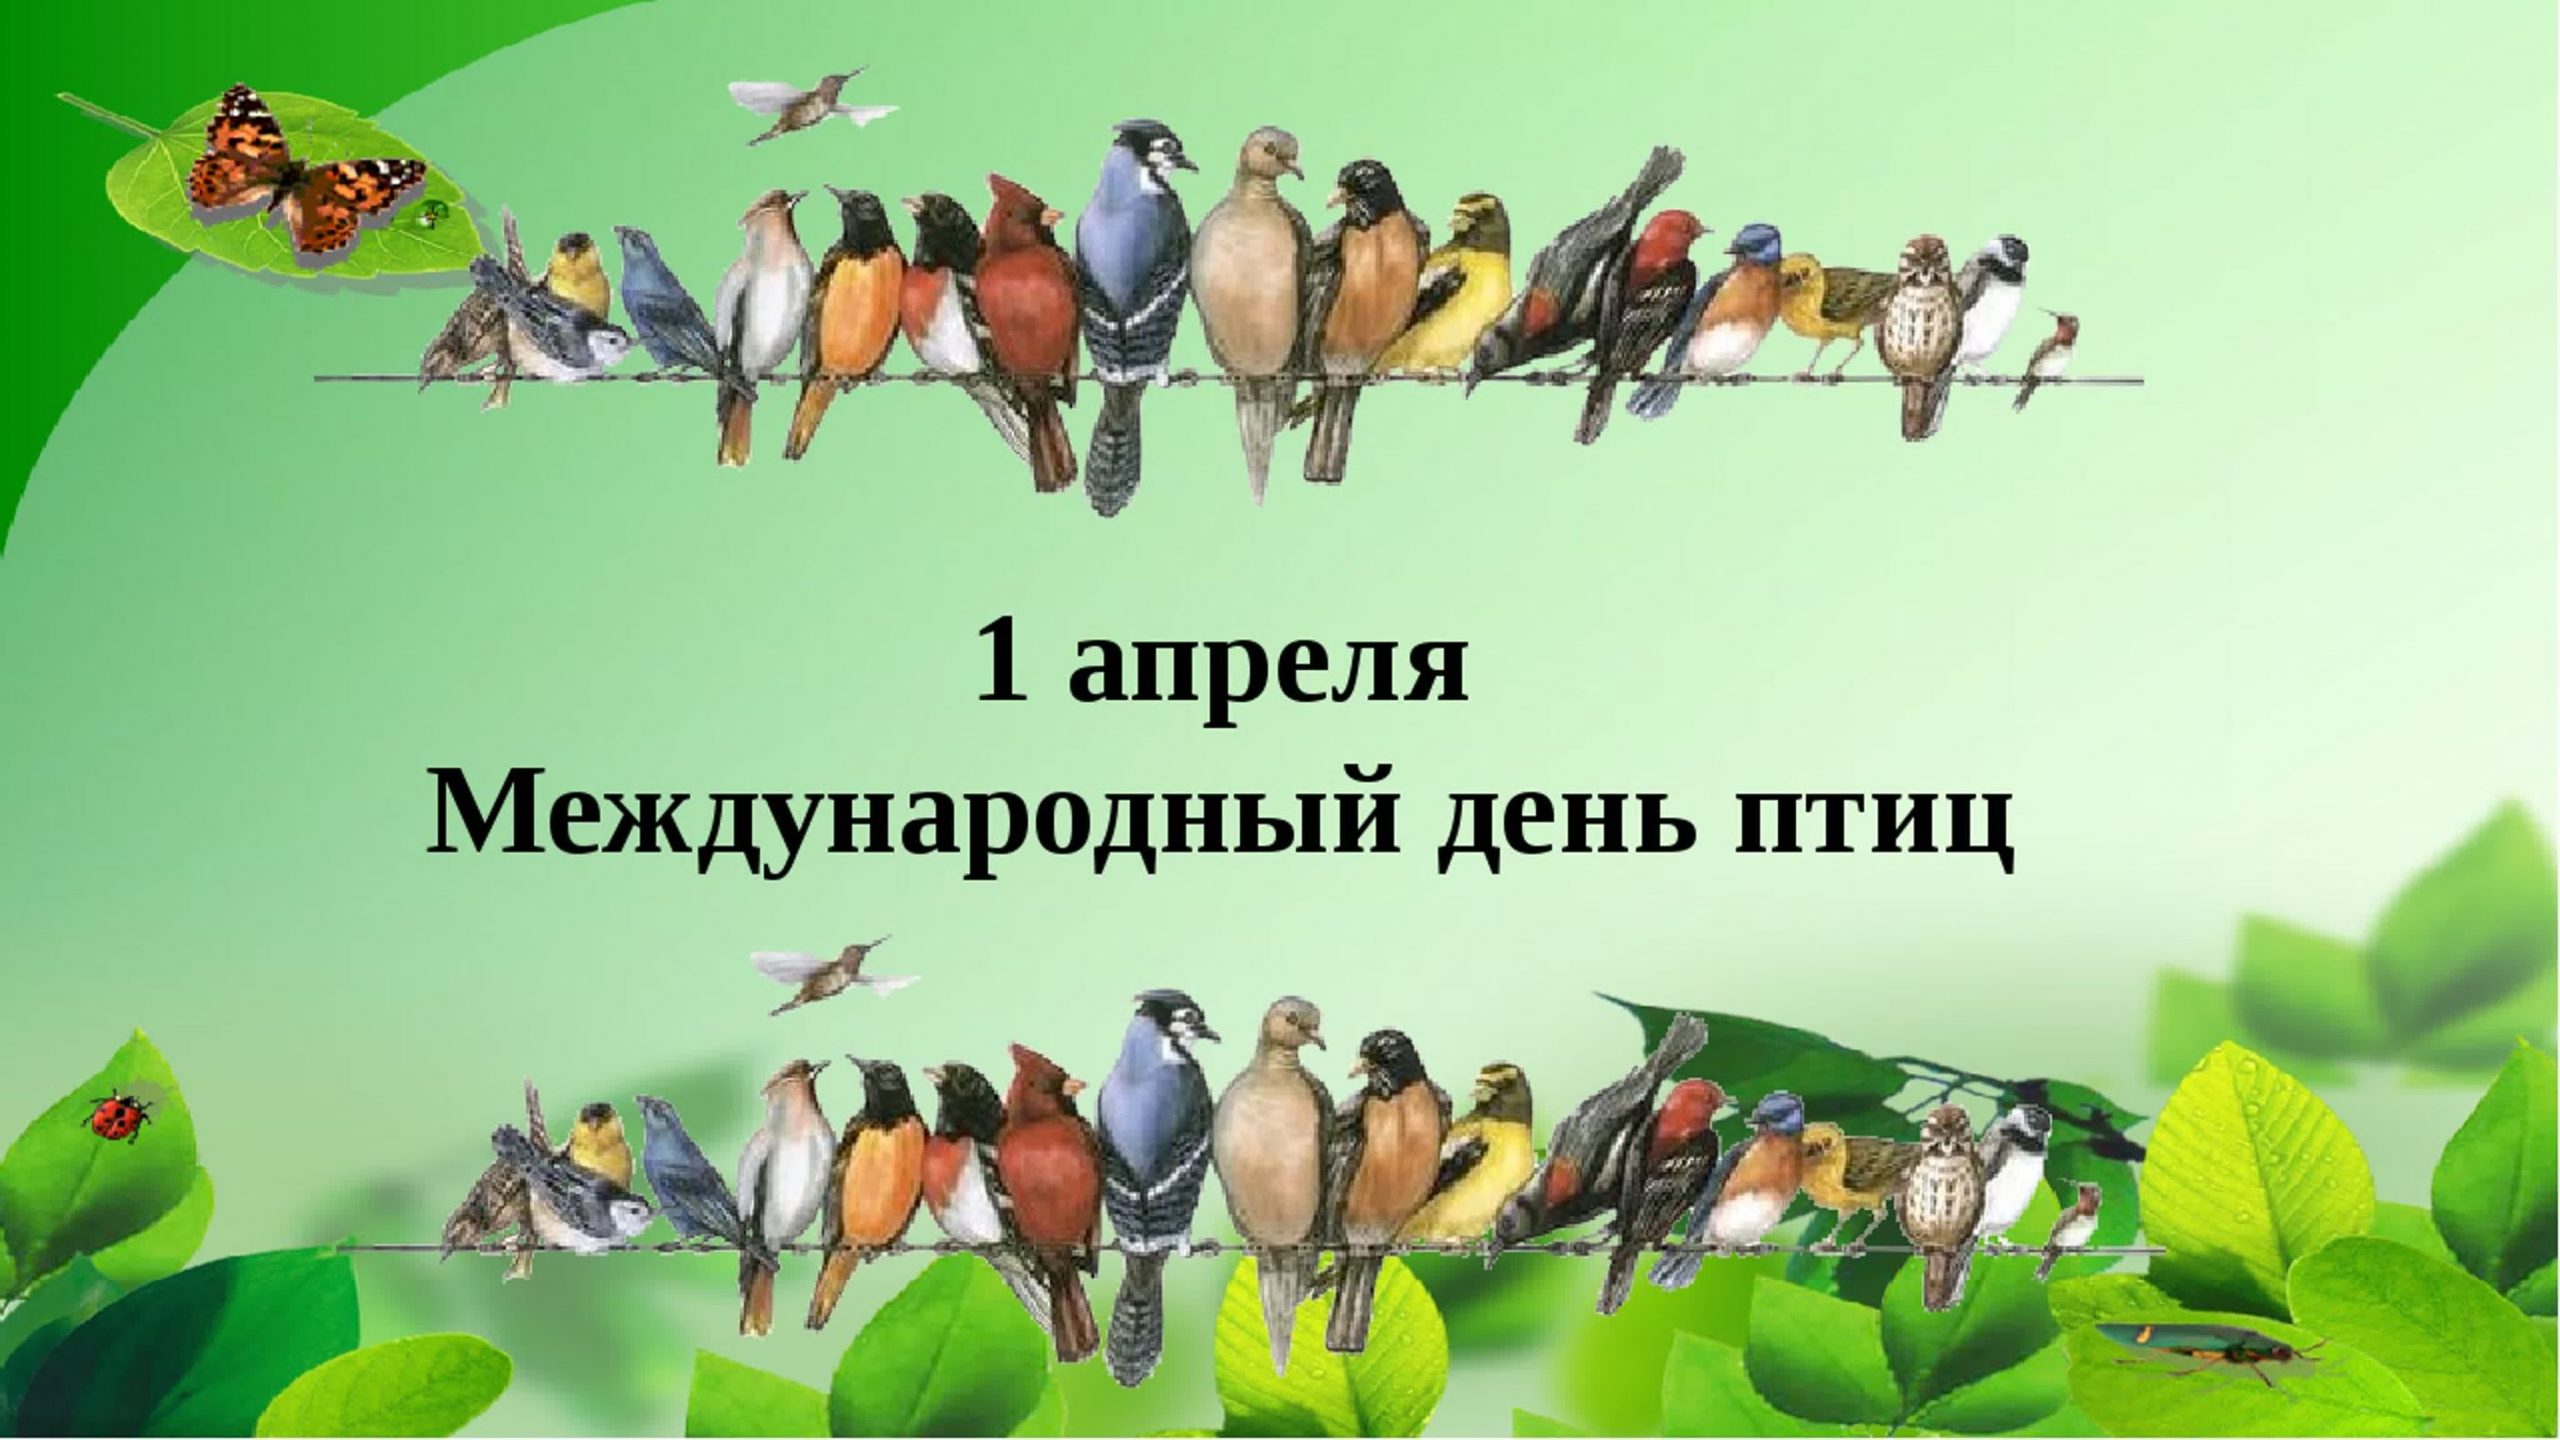 1 апреля всемирный день птиц. День птиц. Международный день птиц. 1 Апреля Международный день птиц. Всемирный день птиц для детей.